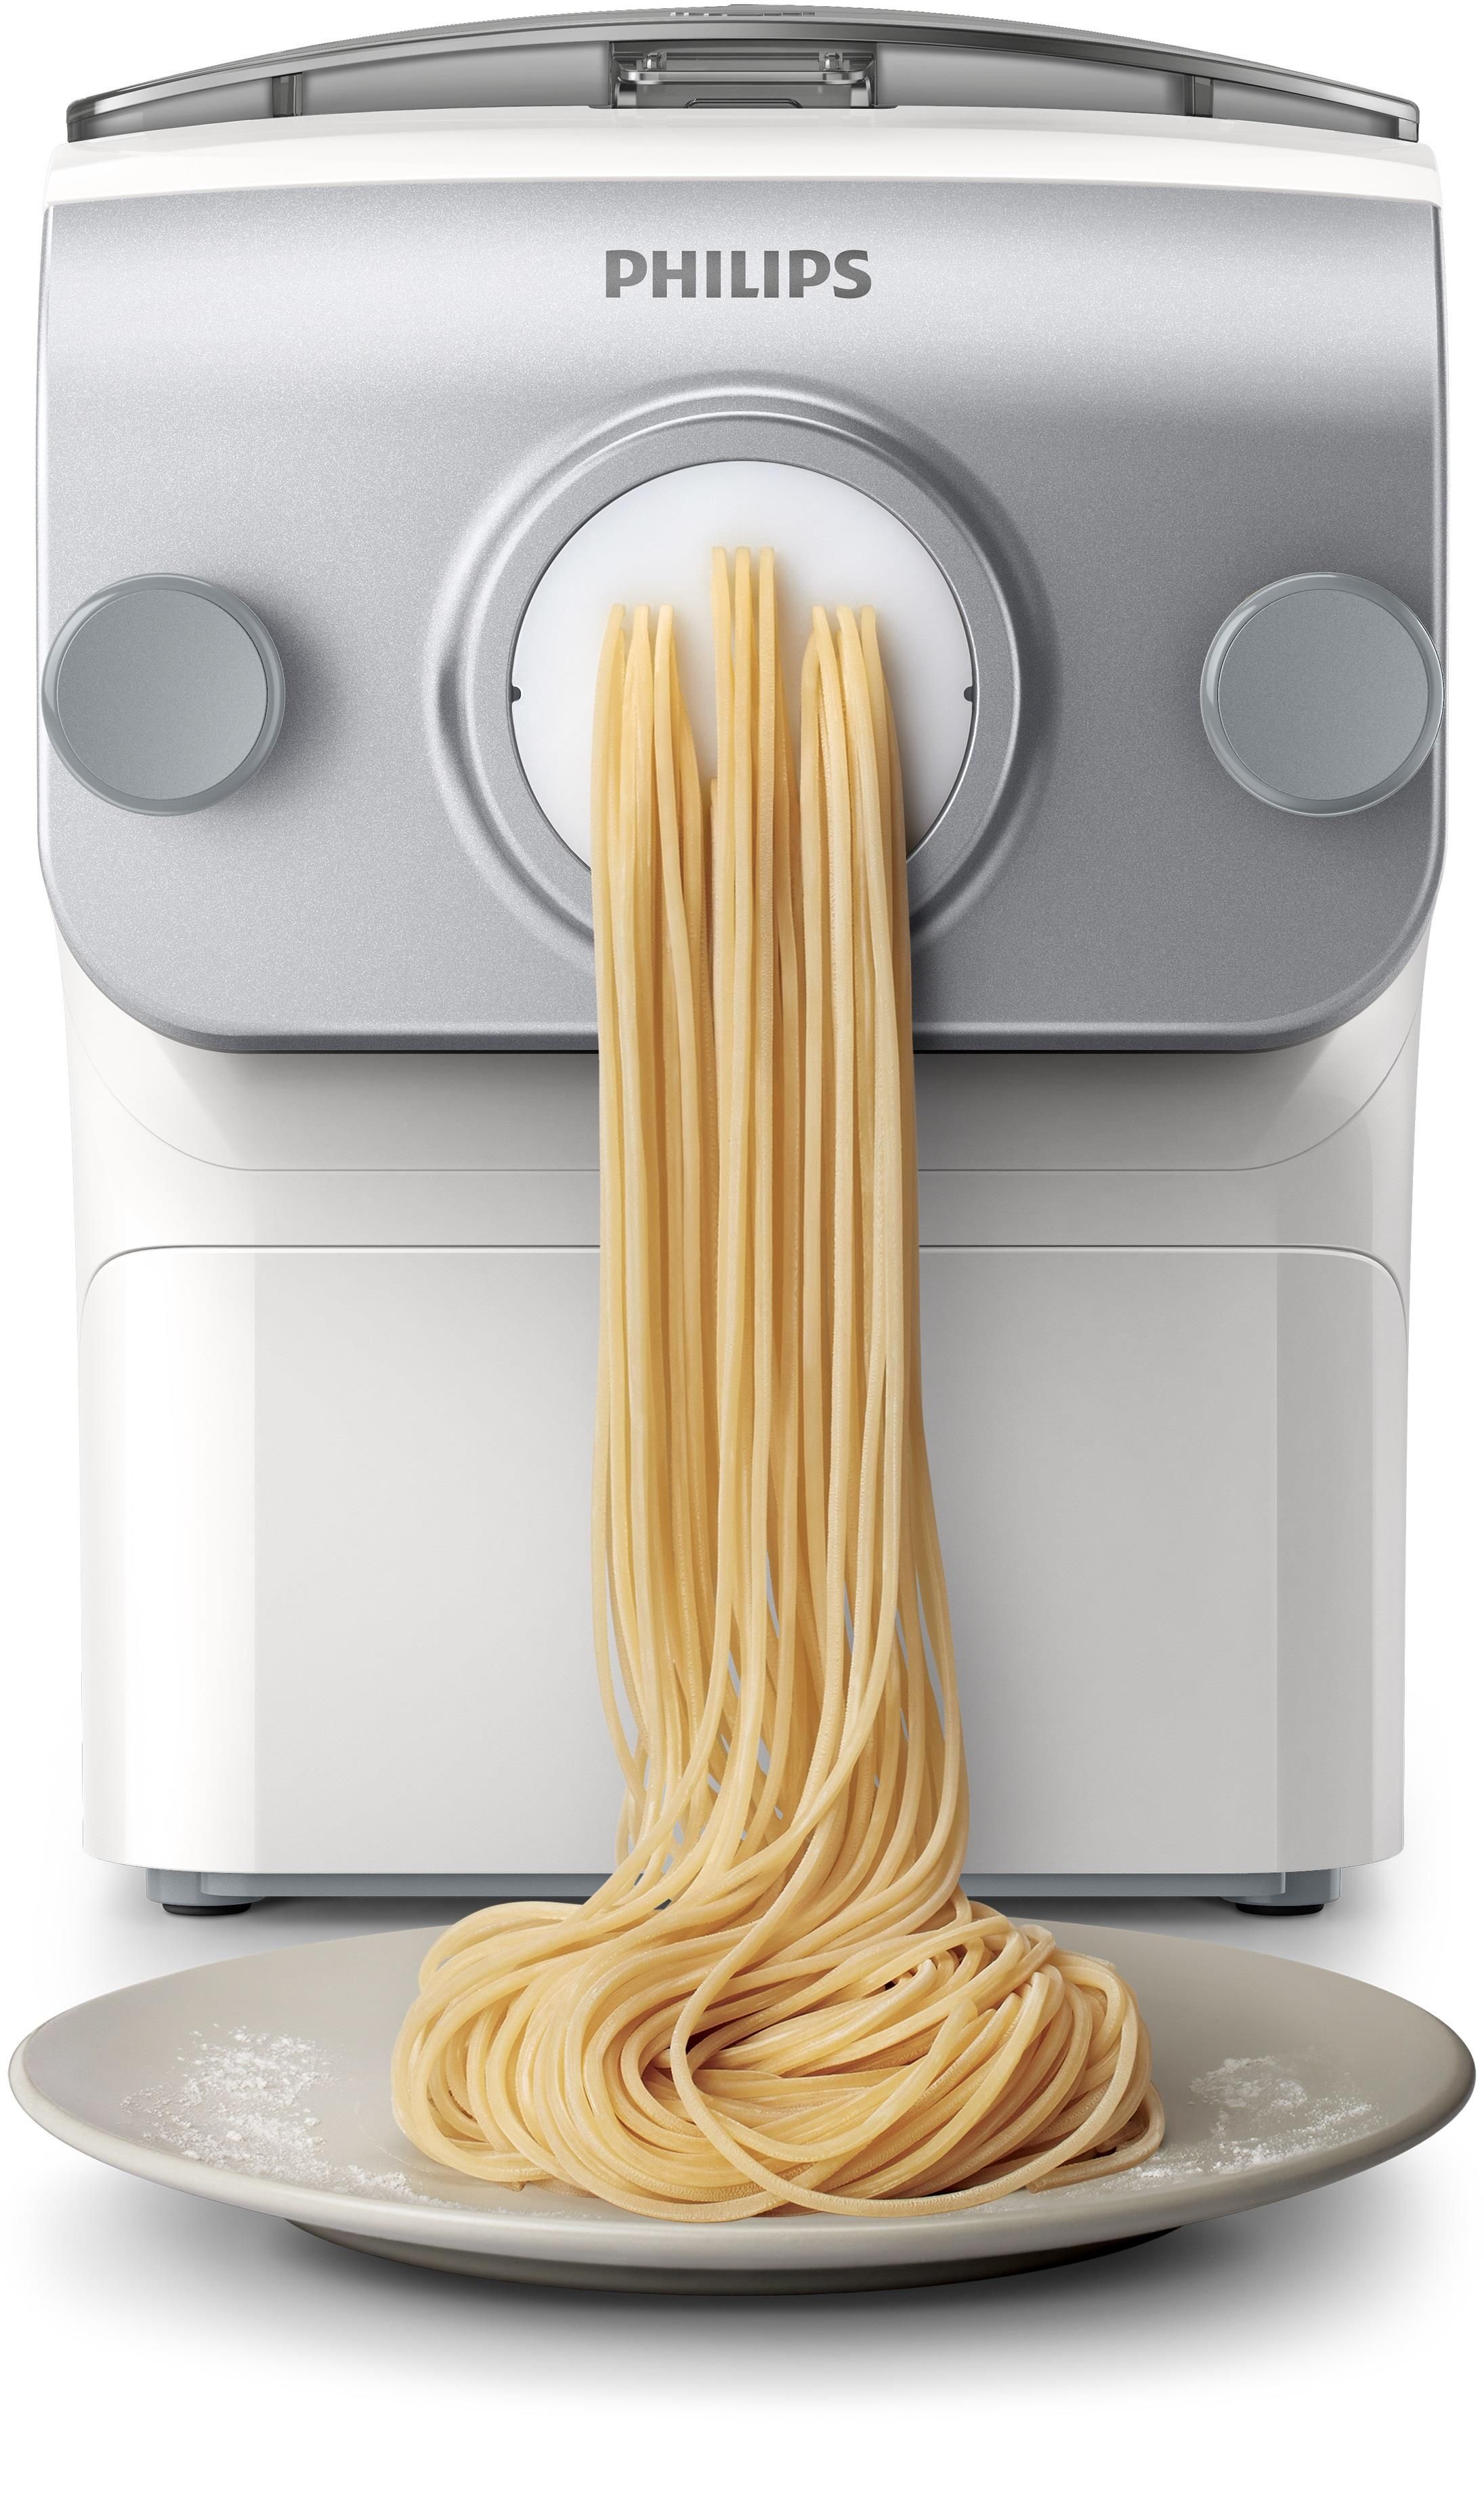 Macchina per la pasta fresca fatta in casa, PastaIo by Classe